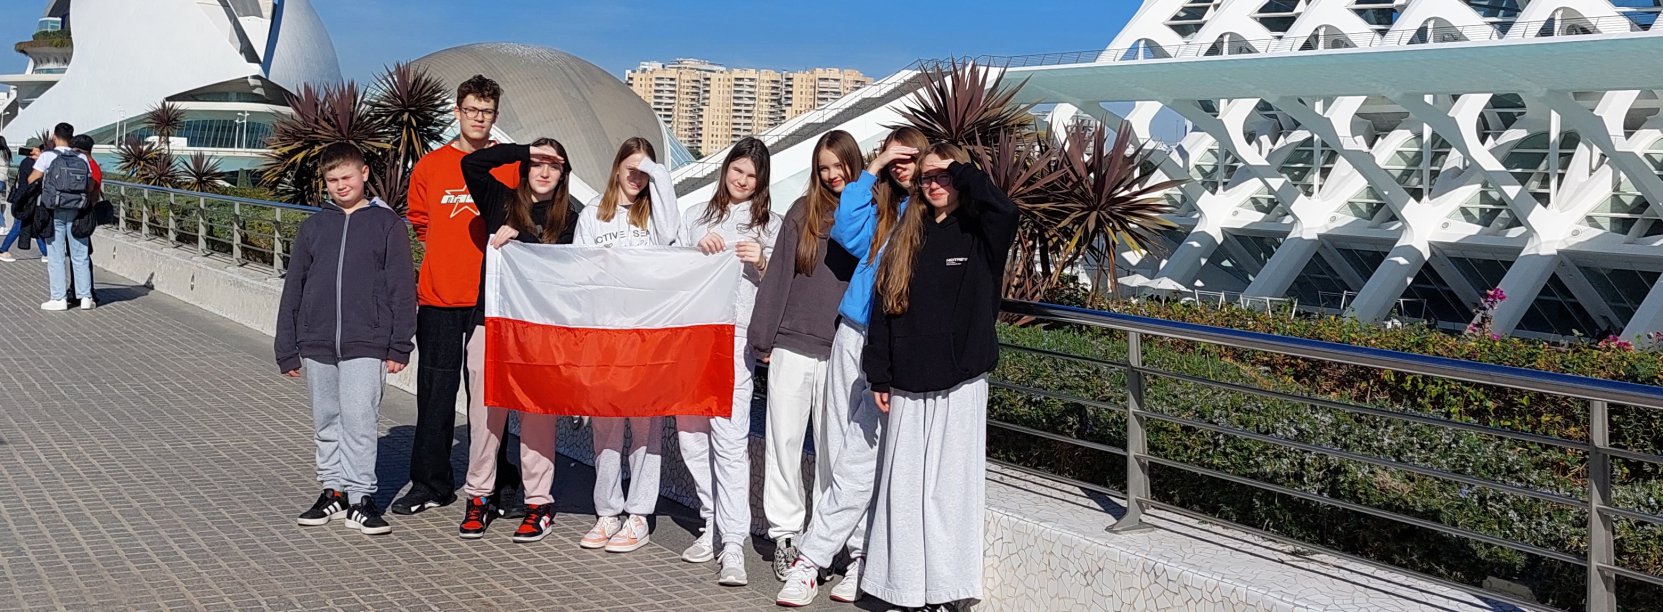 Osmioro uczniów na wspólnym zdjęciu, z przodu flaga Polski, bniebieskie niebo